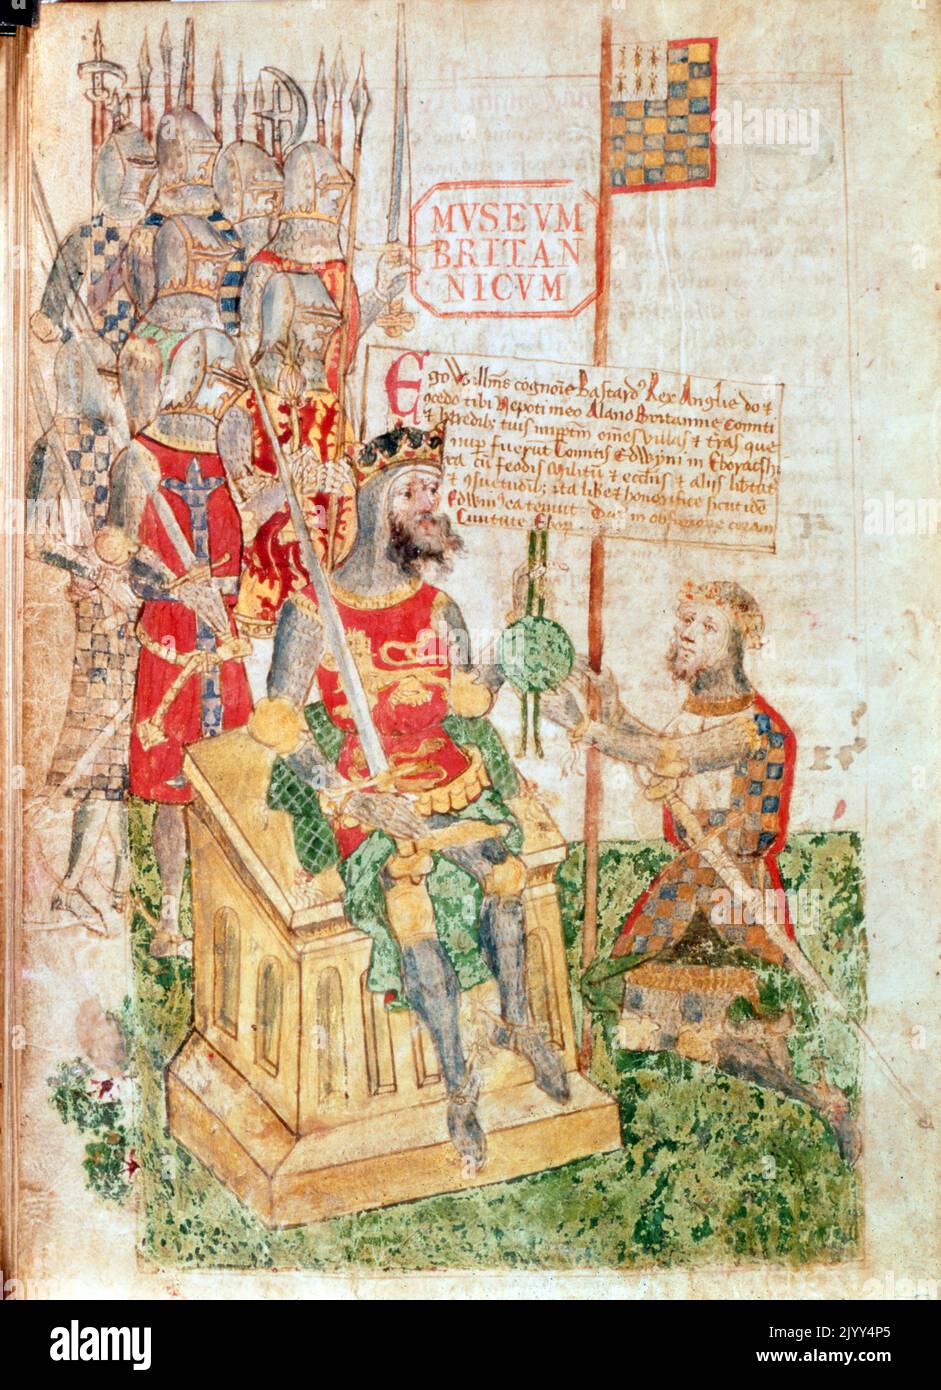 William le Conquérant, accordant Richmond shire à Alan Rufus, comte de Bretagne, au Registre de l'honneur de Richmond. Manuscrit illustré utilisant de l'encre et des pigments sur le vellum. En date du 1480. Lors de la bataille de Hastings en 1066, William le Conquérant fut aidé par Alan Rufus, comte de Bretagne, et lui remit par la suite de vastes domaines dans le nord de l'Angleterre, qui furent formés en l'honneur de Richmond. Banque D'Images